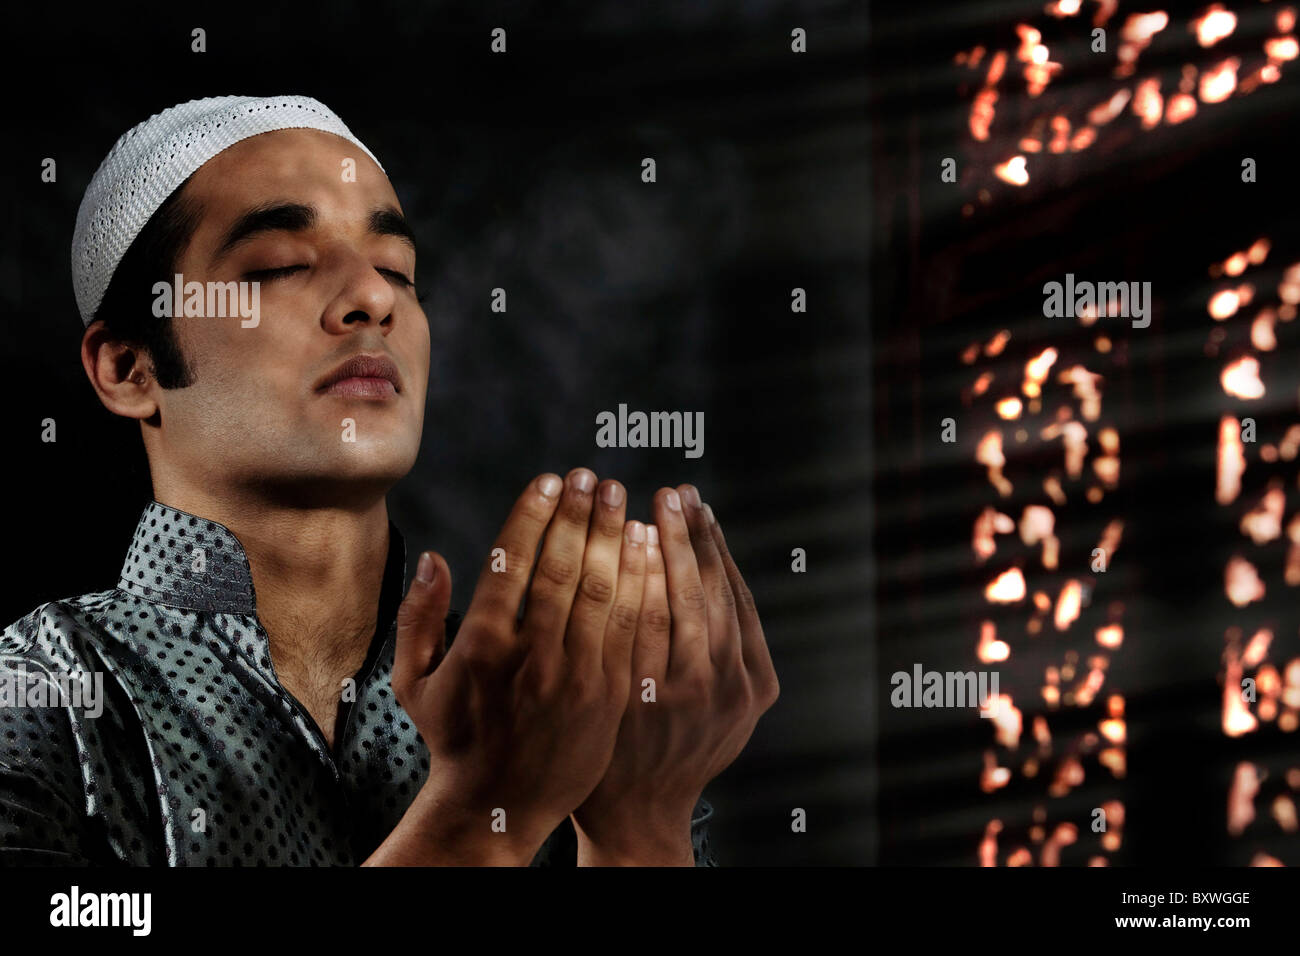 Muslim man praying Stock Photo